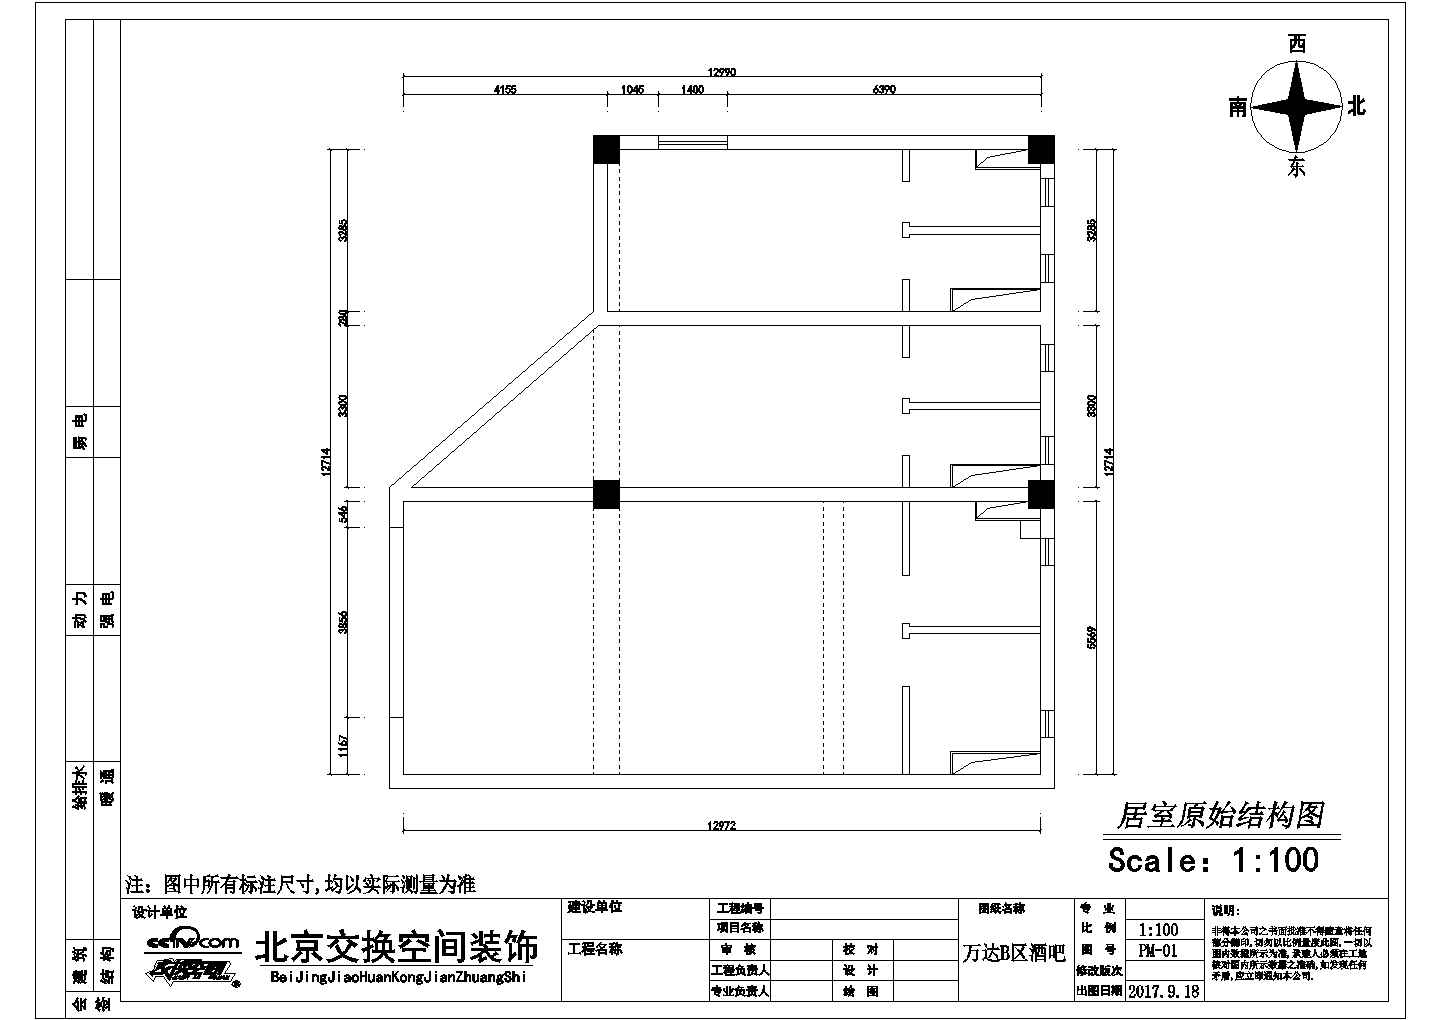 北京万达某酒吧整套装修设计cad施工图